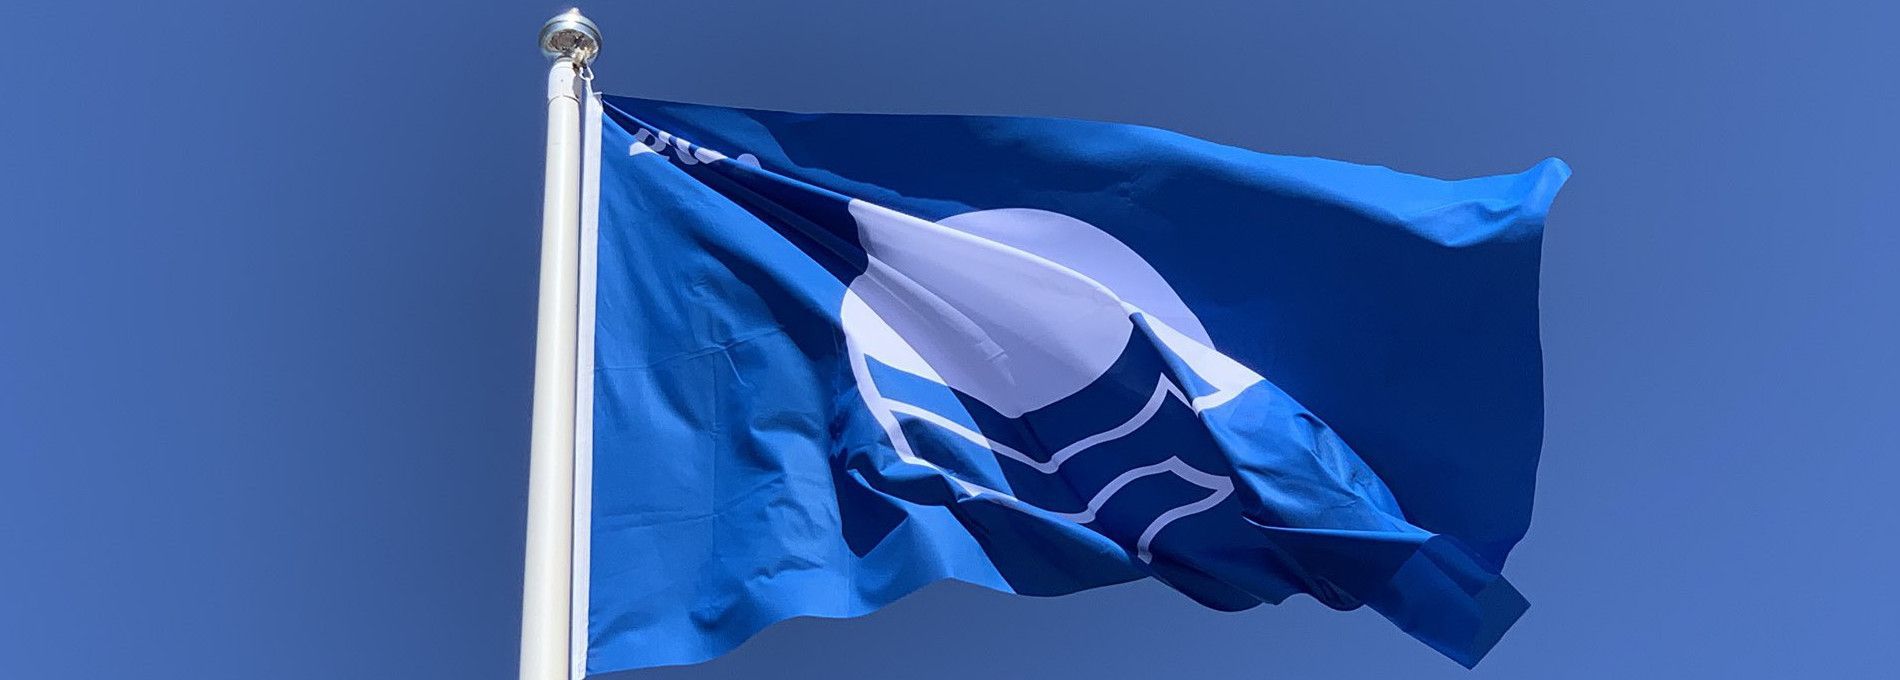 Blauwe Vlag - VVV Ameland